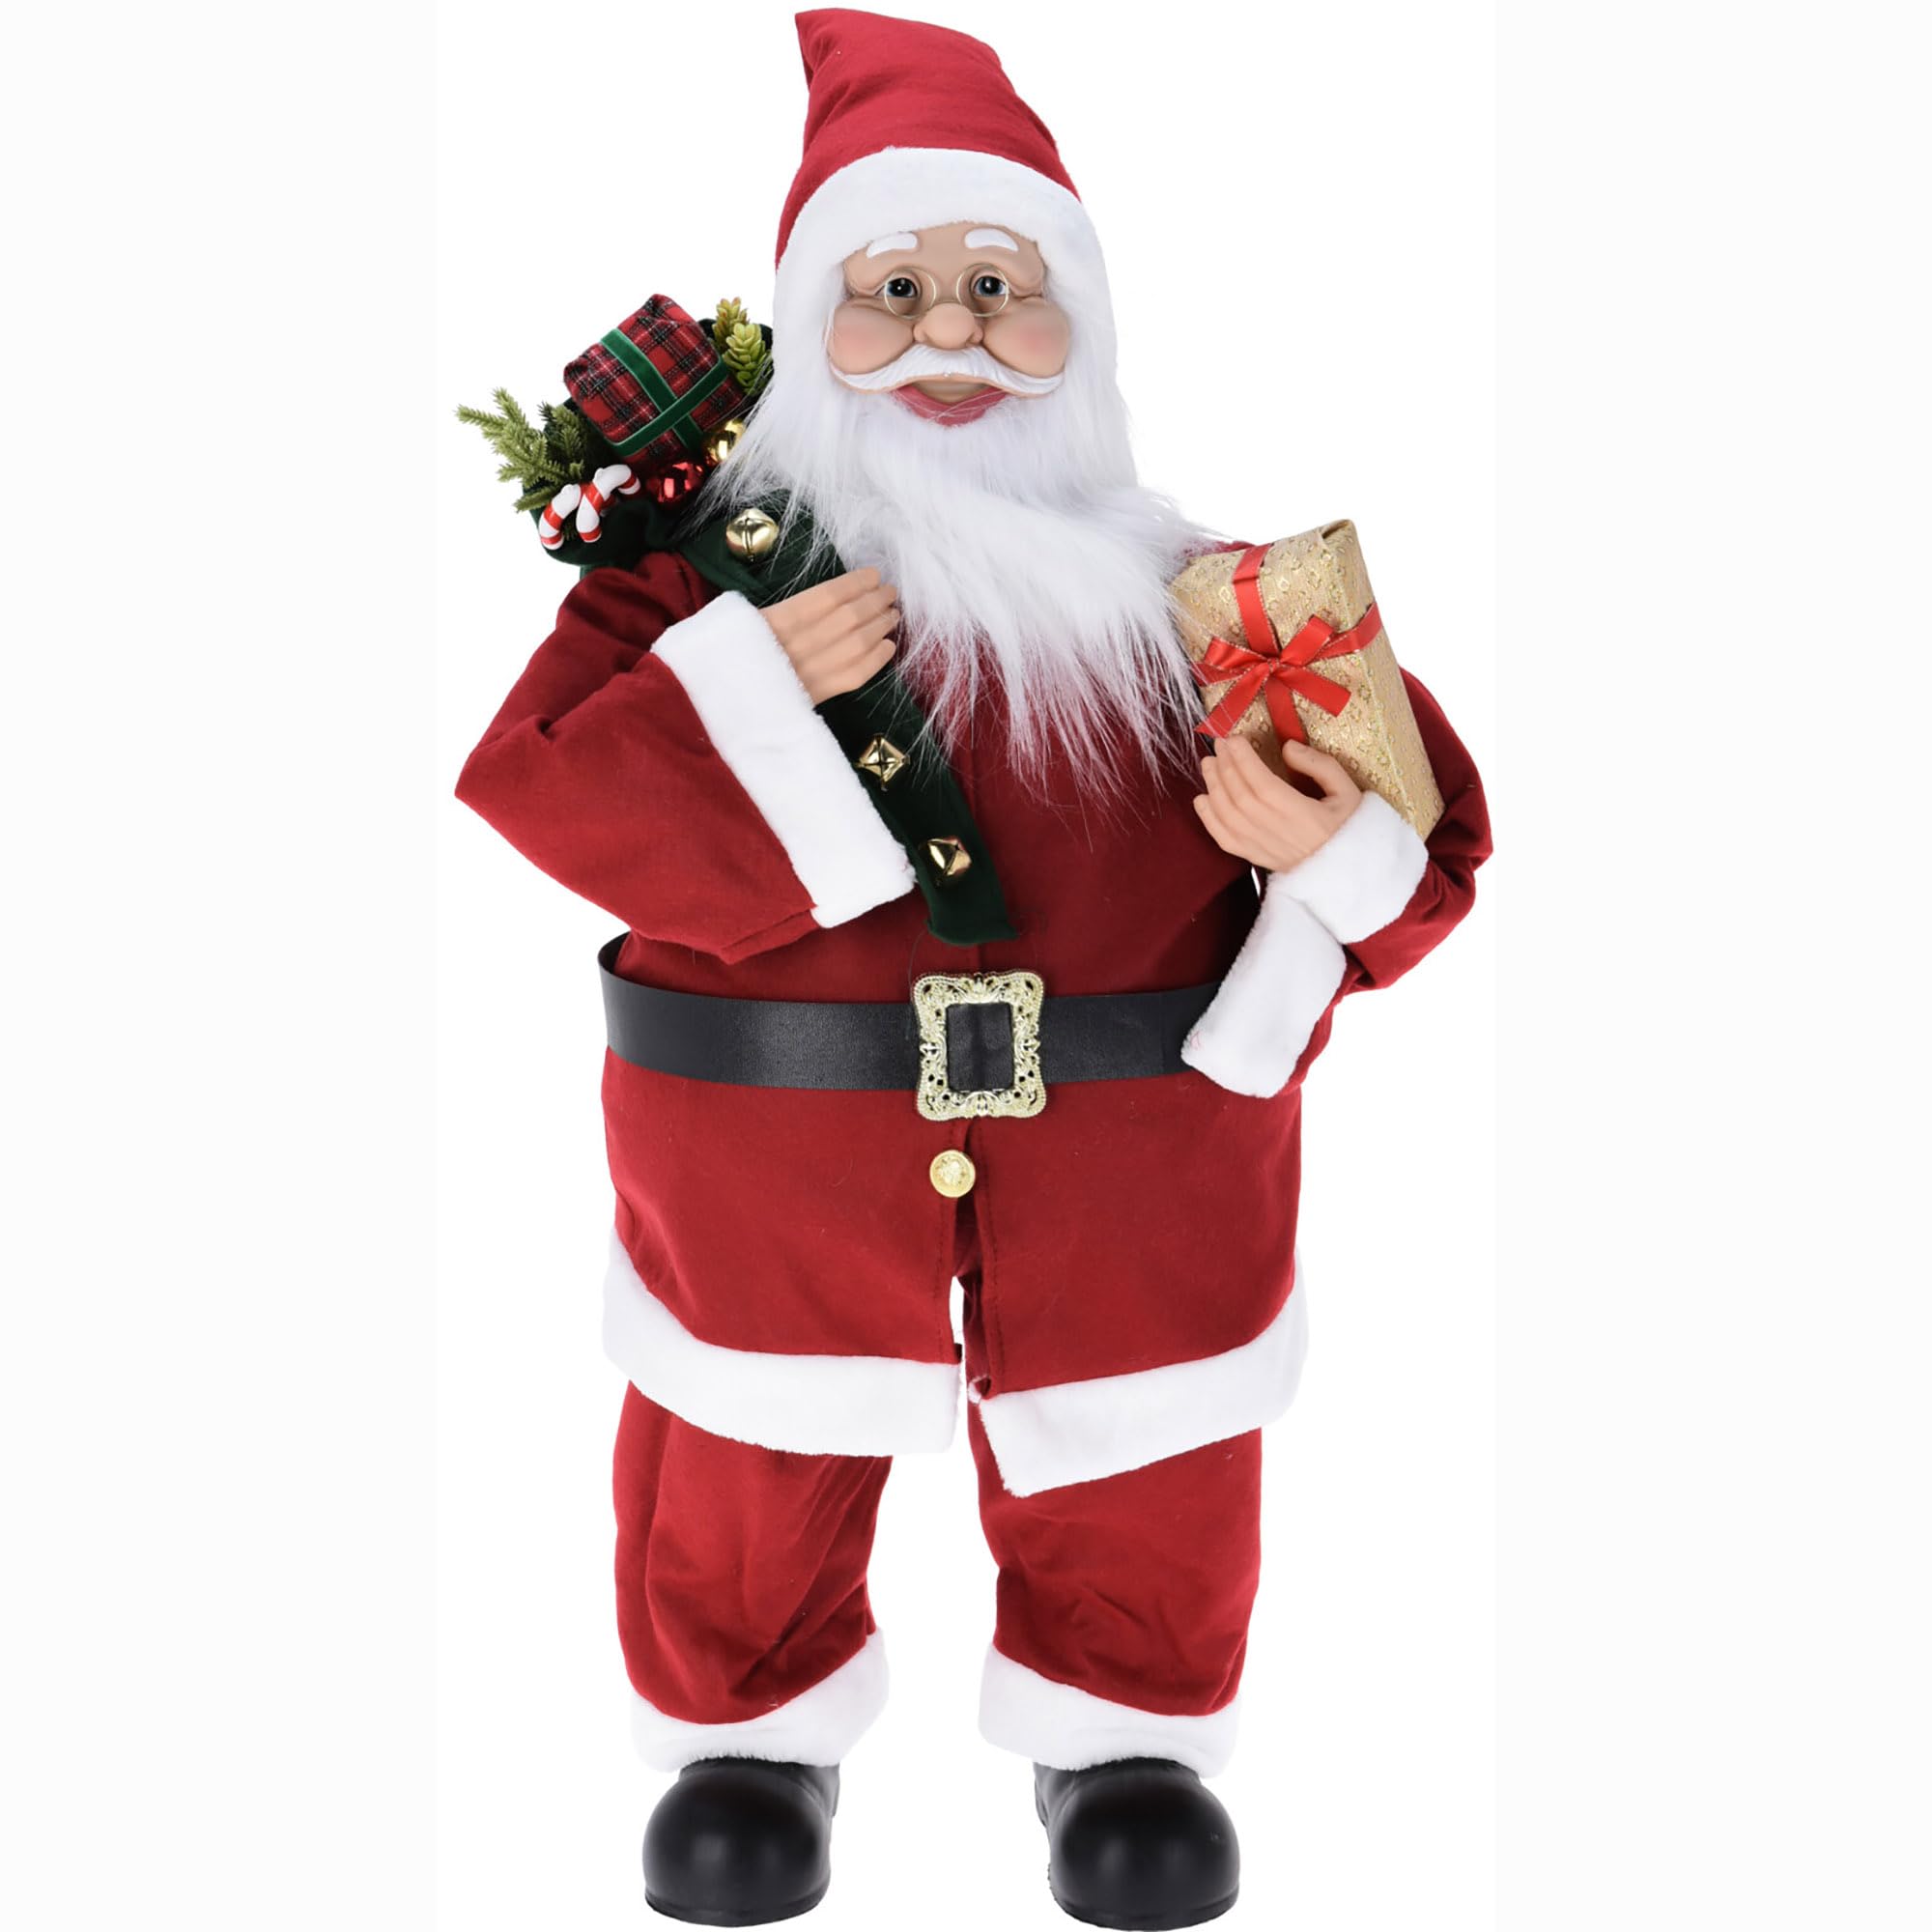 Annastore Weihnachtsmann zum Stellen H 80 cm Nikolaus-Figur - Santa Claus - Weihnachtsfiguren zum Stellen - Nikolaus zum Stellen (Nikolaus klassisch rot - 80 cm)